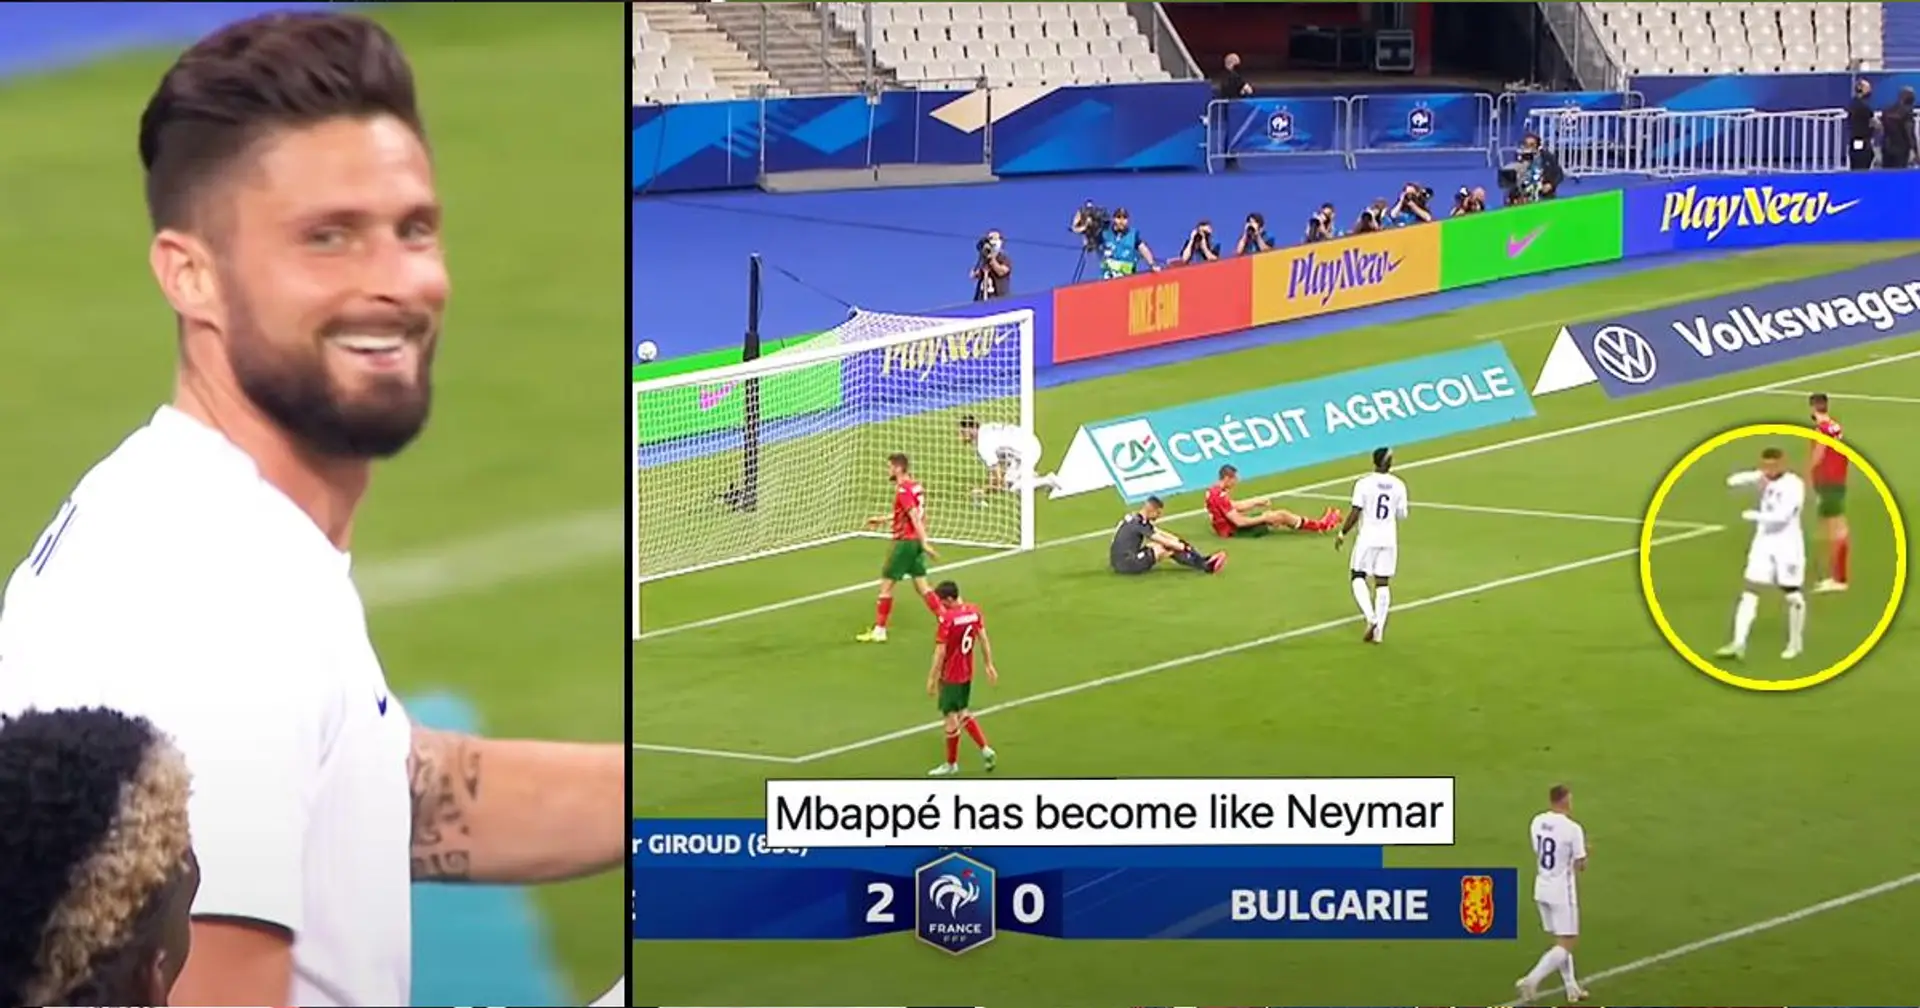 'Se volvió como Neymar'. Kylian Mbappé criticado por su reacción en el gol de Olivier Giroud